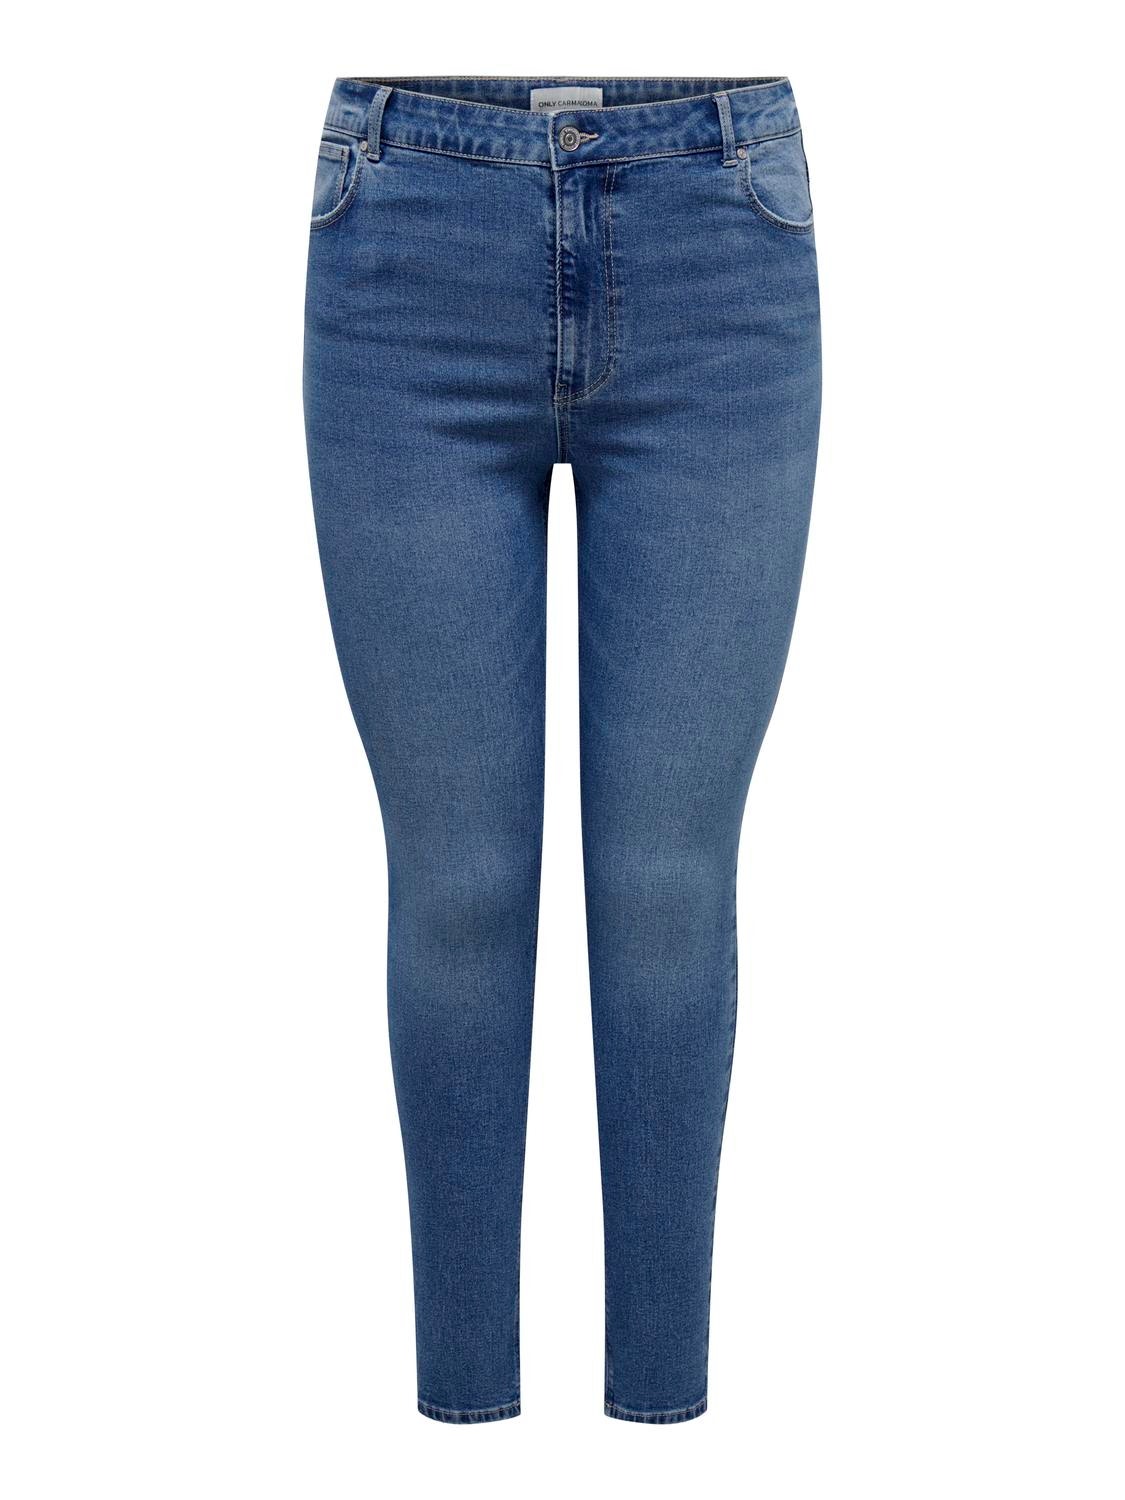 ONLY Skinny Fit Høy midje Jeans -Light Blue Denim - 15310450